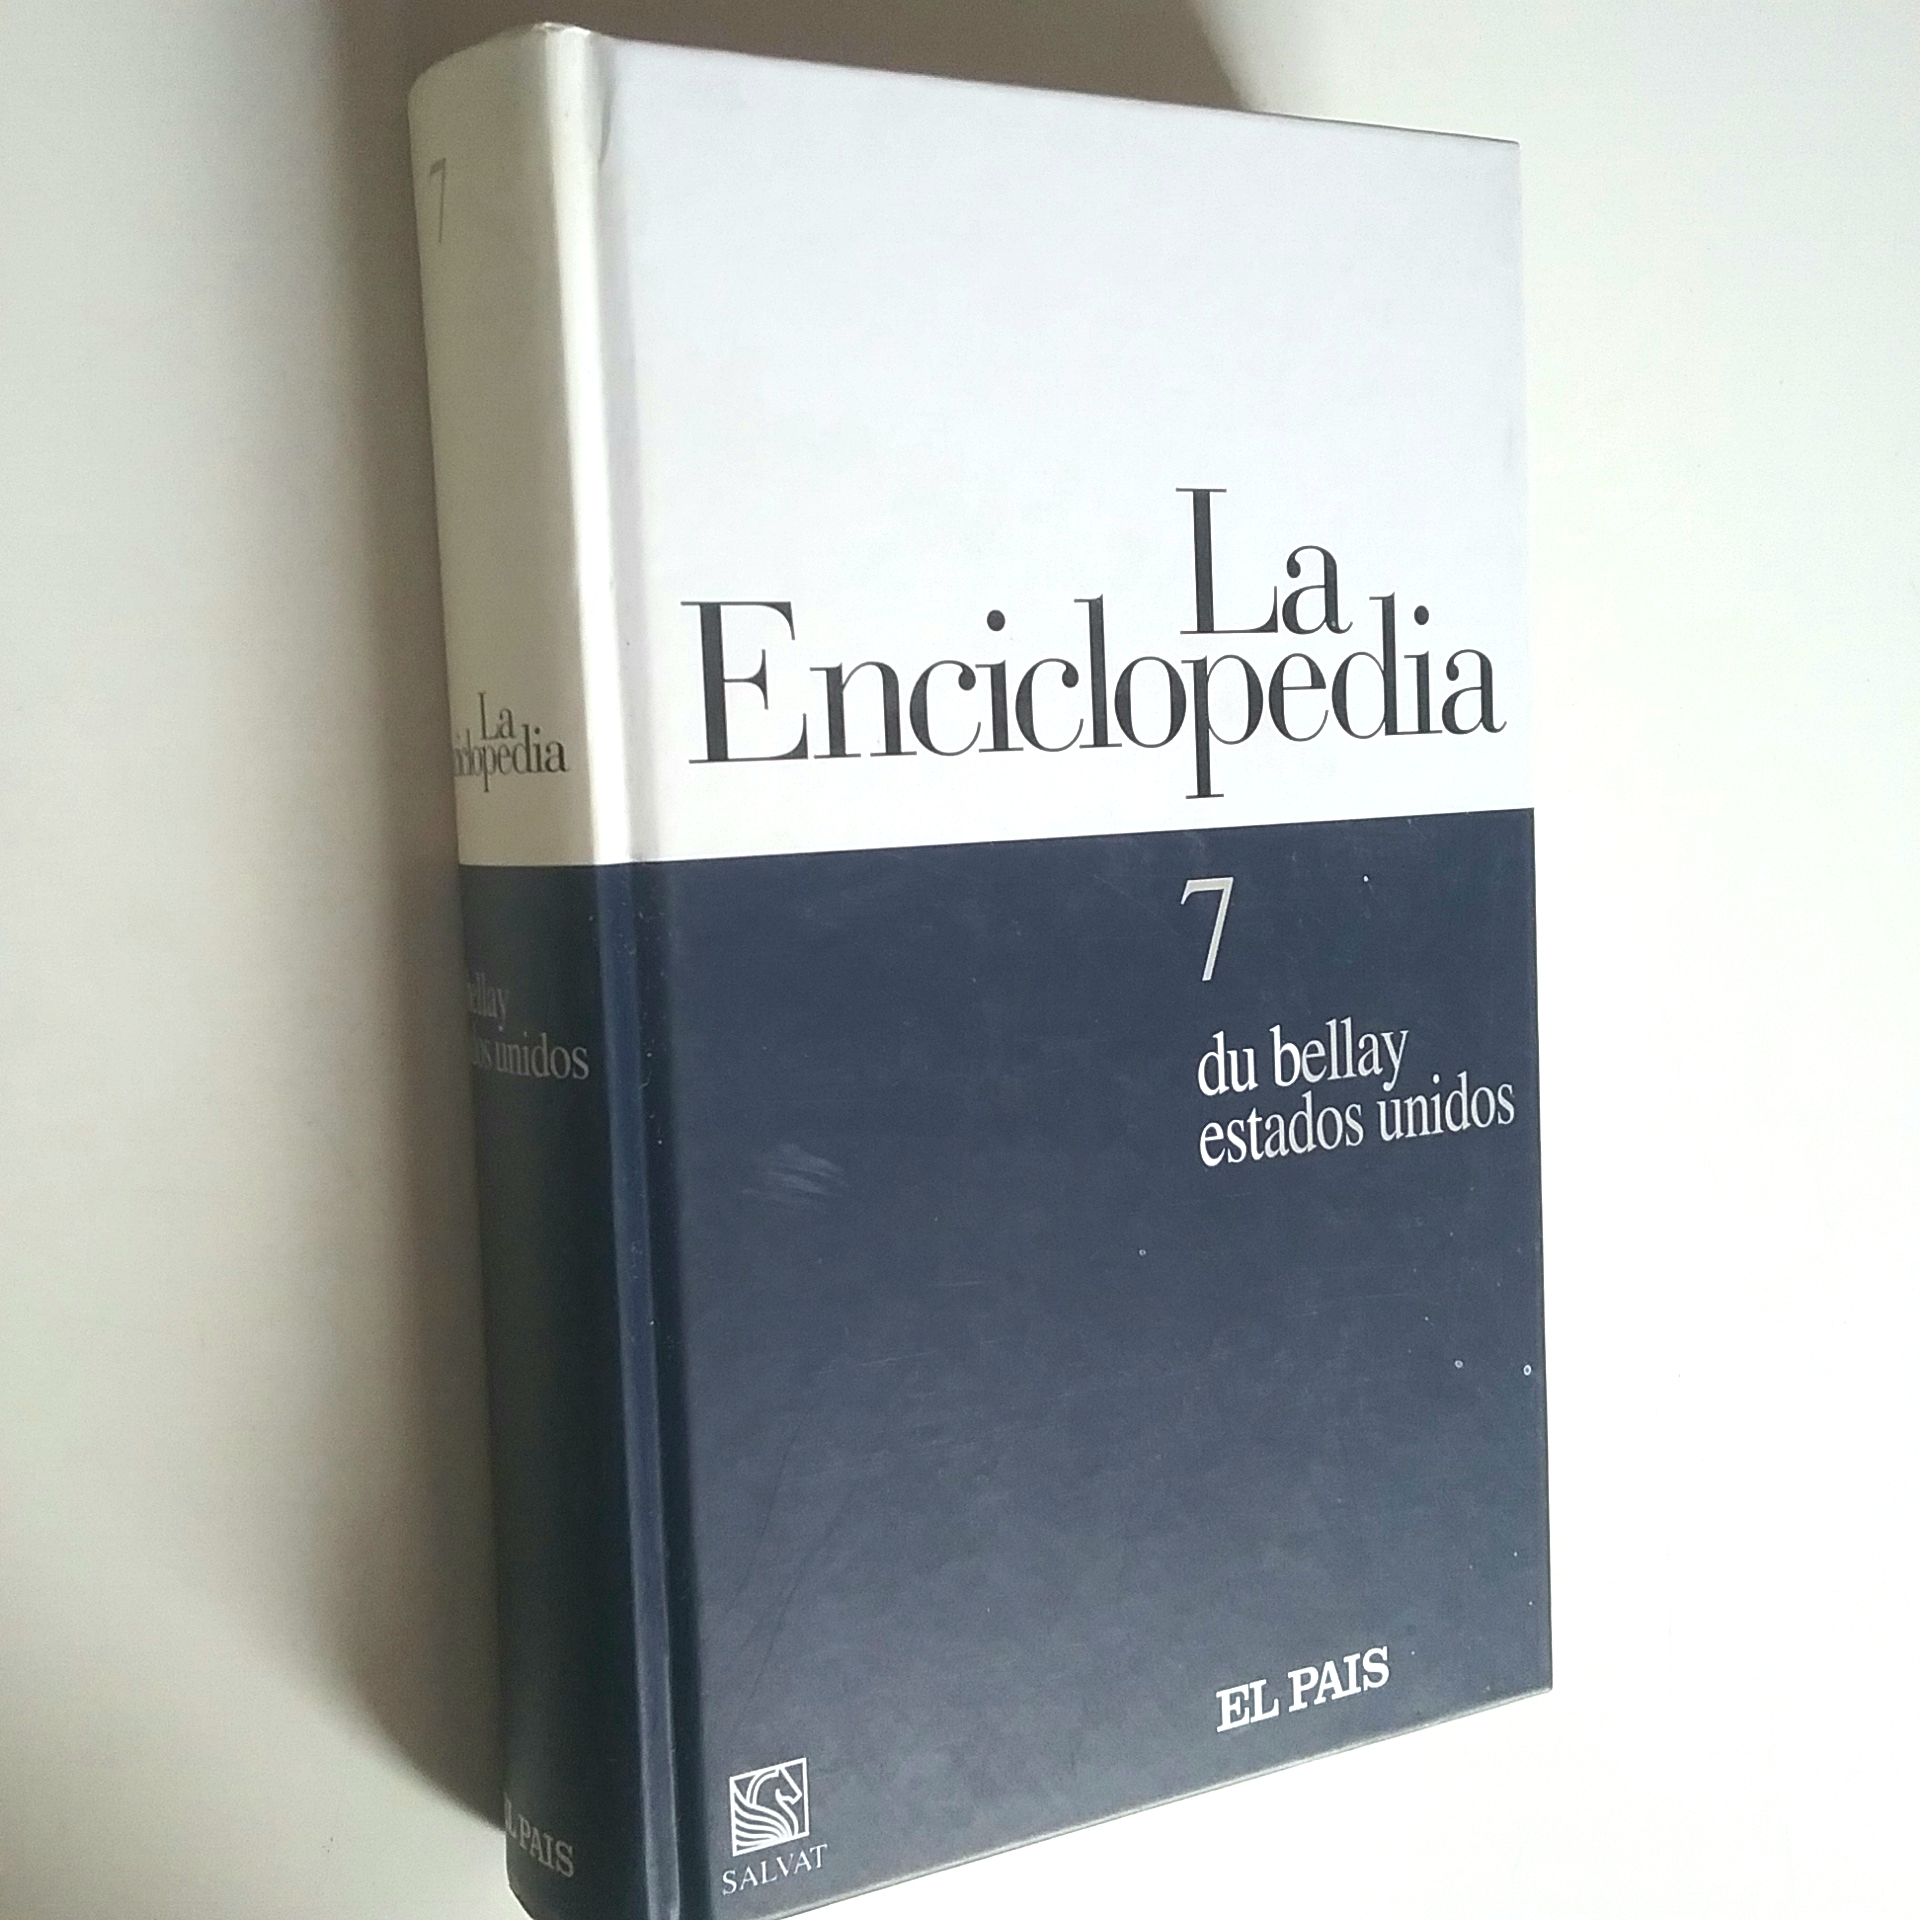 La enciclopedia. 7. du bellay - estados unidos - VV. AA.